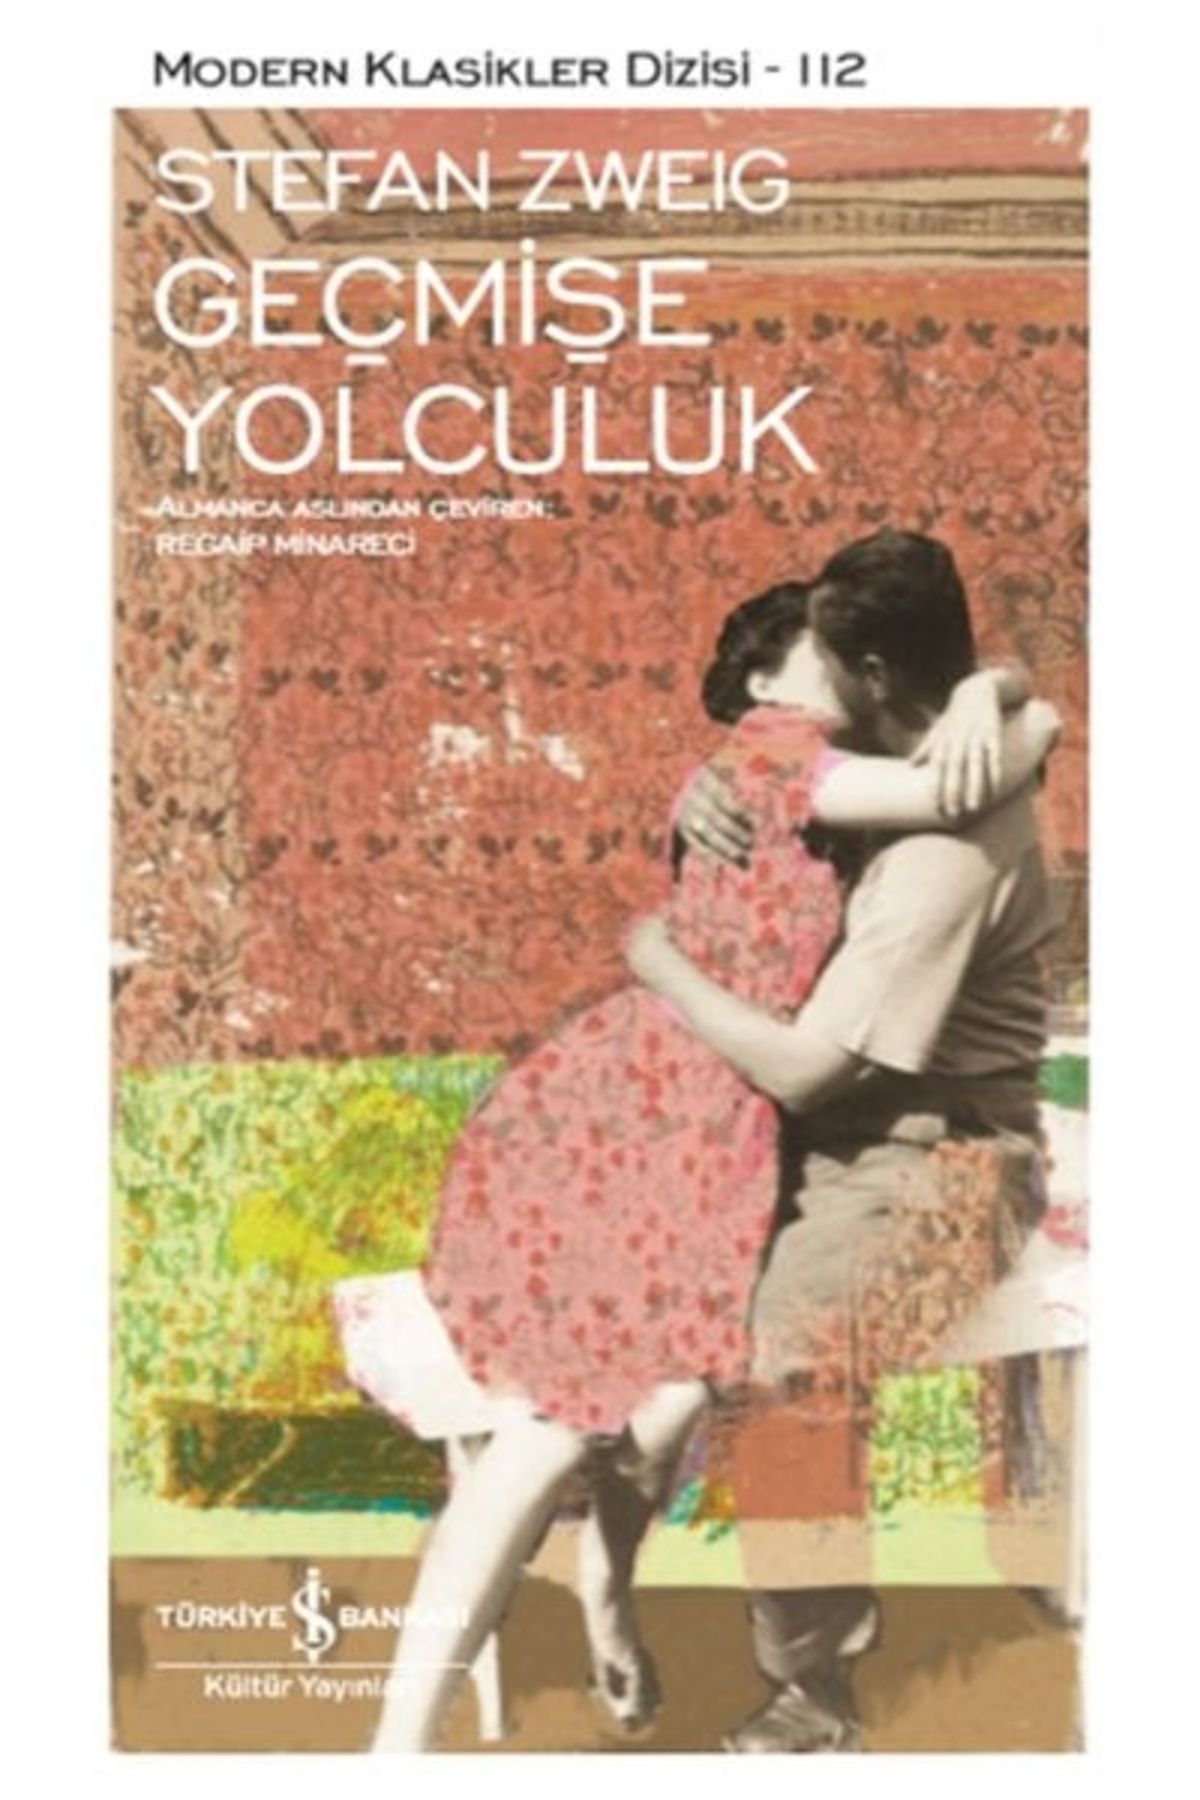 Türkiye İş Bankası Kültür Yayınları Geçmişe Yolculuk - Modern Klasikler Dizisi